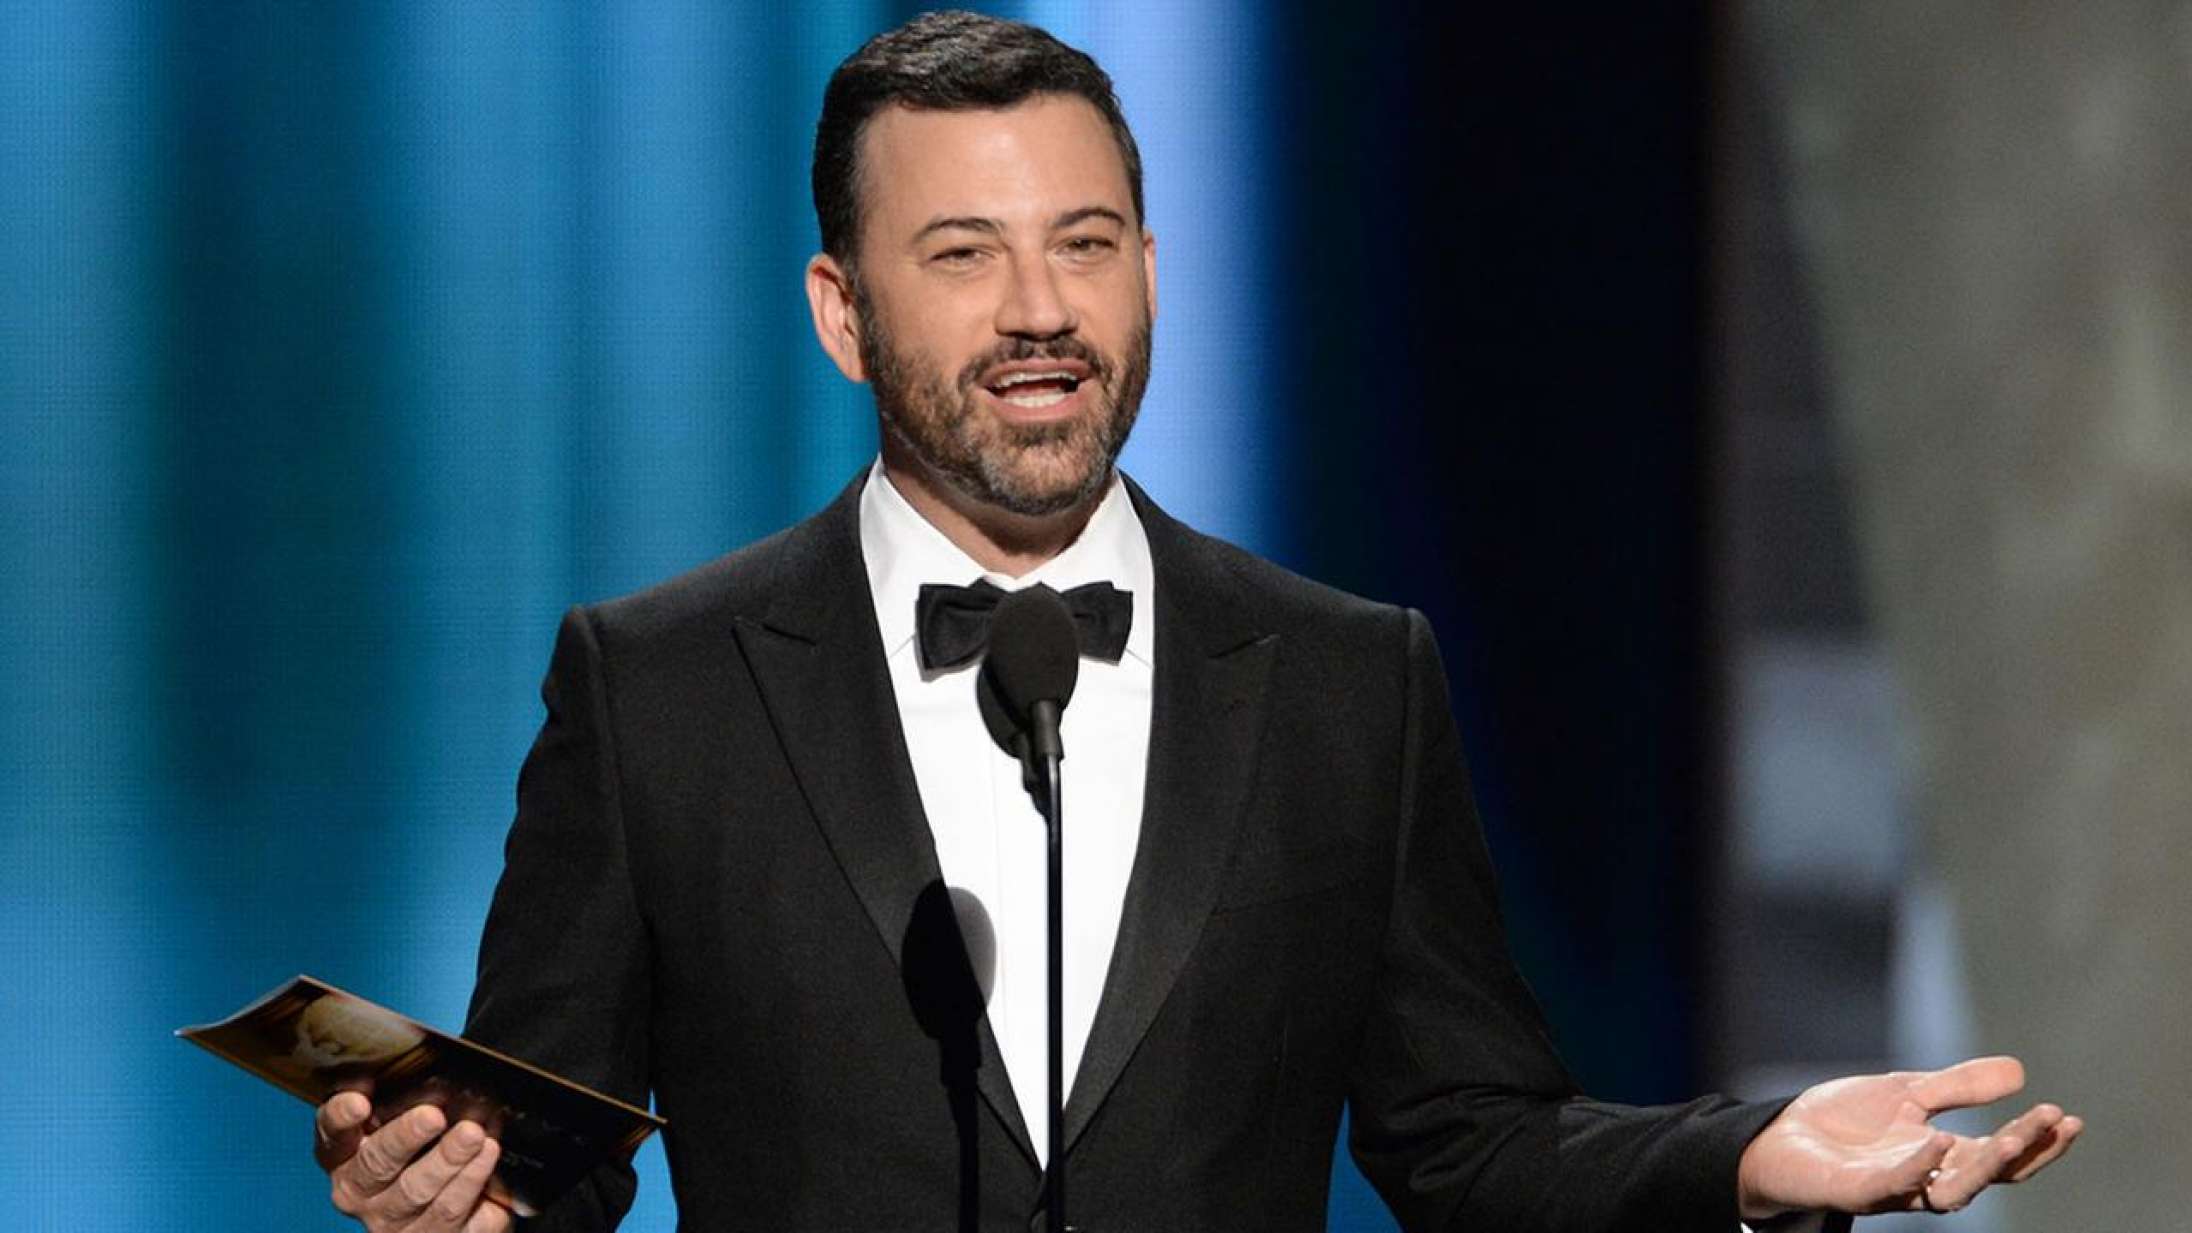 Jimmy Kimmel vender tilbage til Oscar i 2018 (står der i hvert fald på konvolutten)